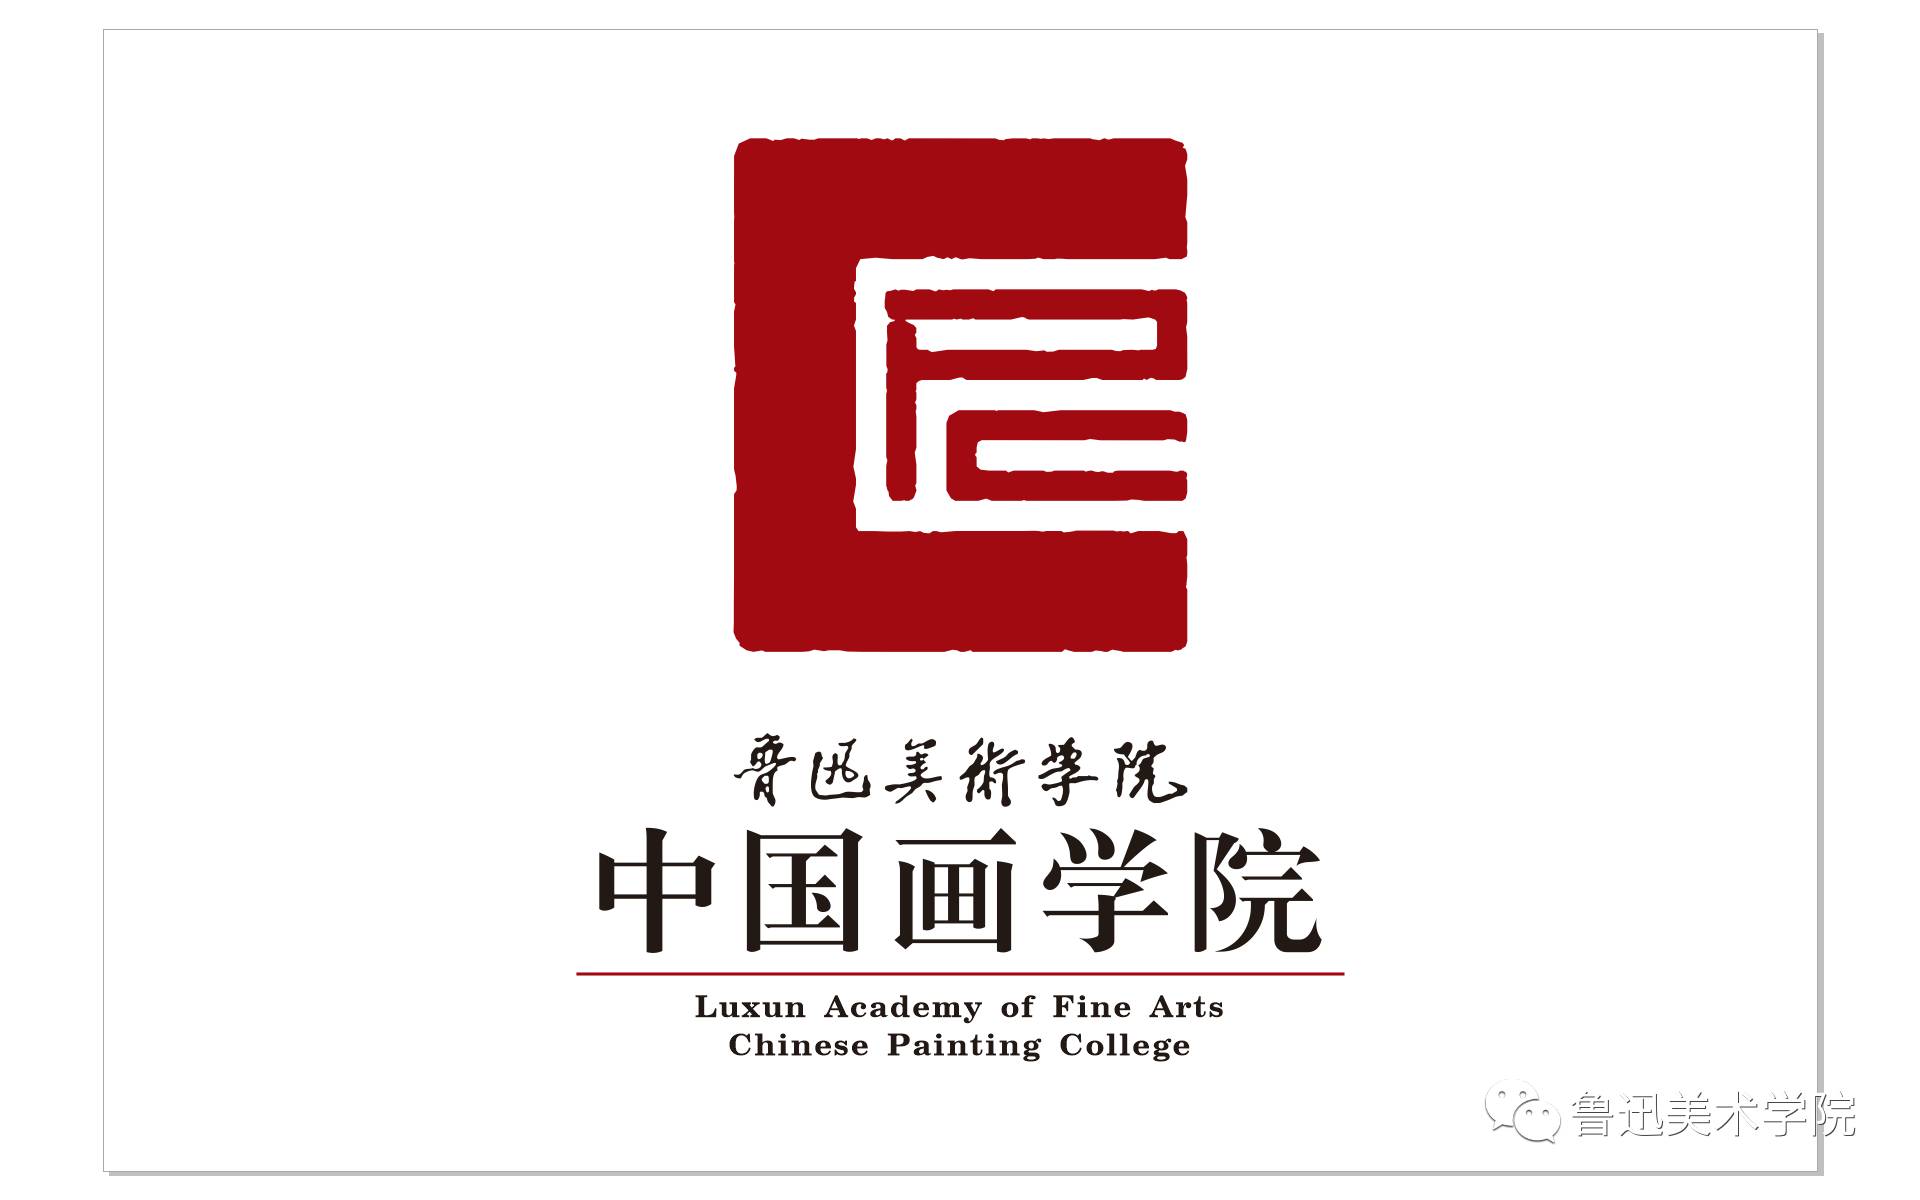 为迎接这充满希望与期许的新年,  月  日晚"鲁迅美术学院中国画学院